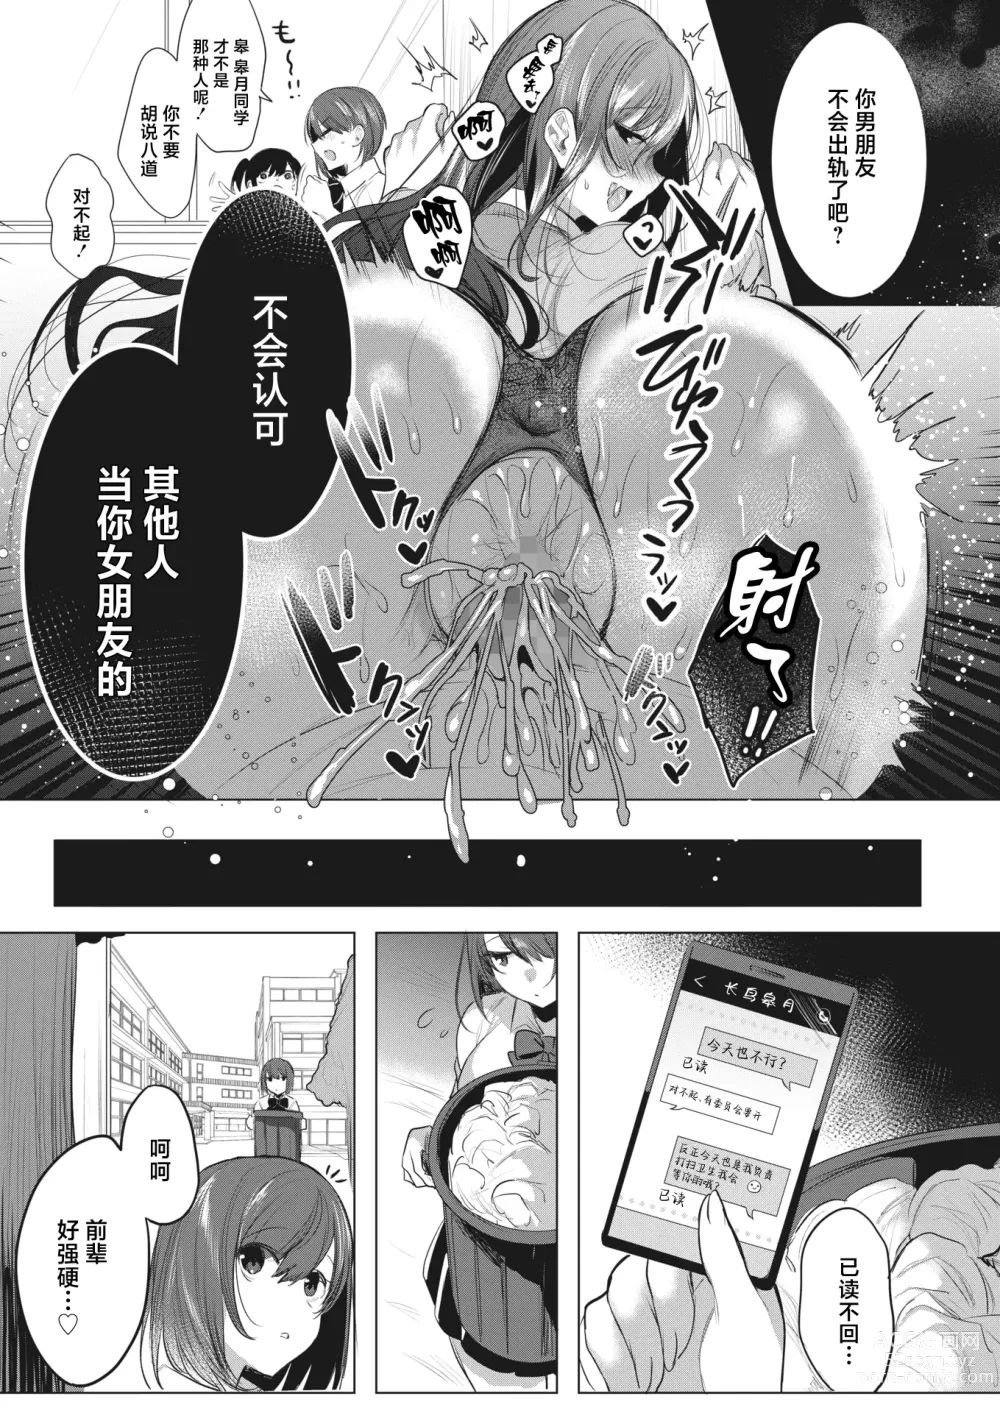 Page 21 of manga Watashi no Mono ni Natte